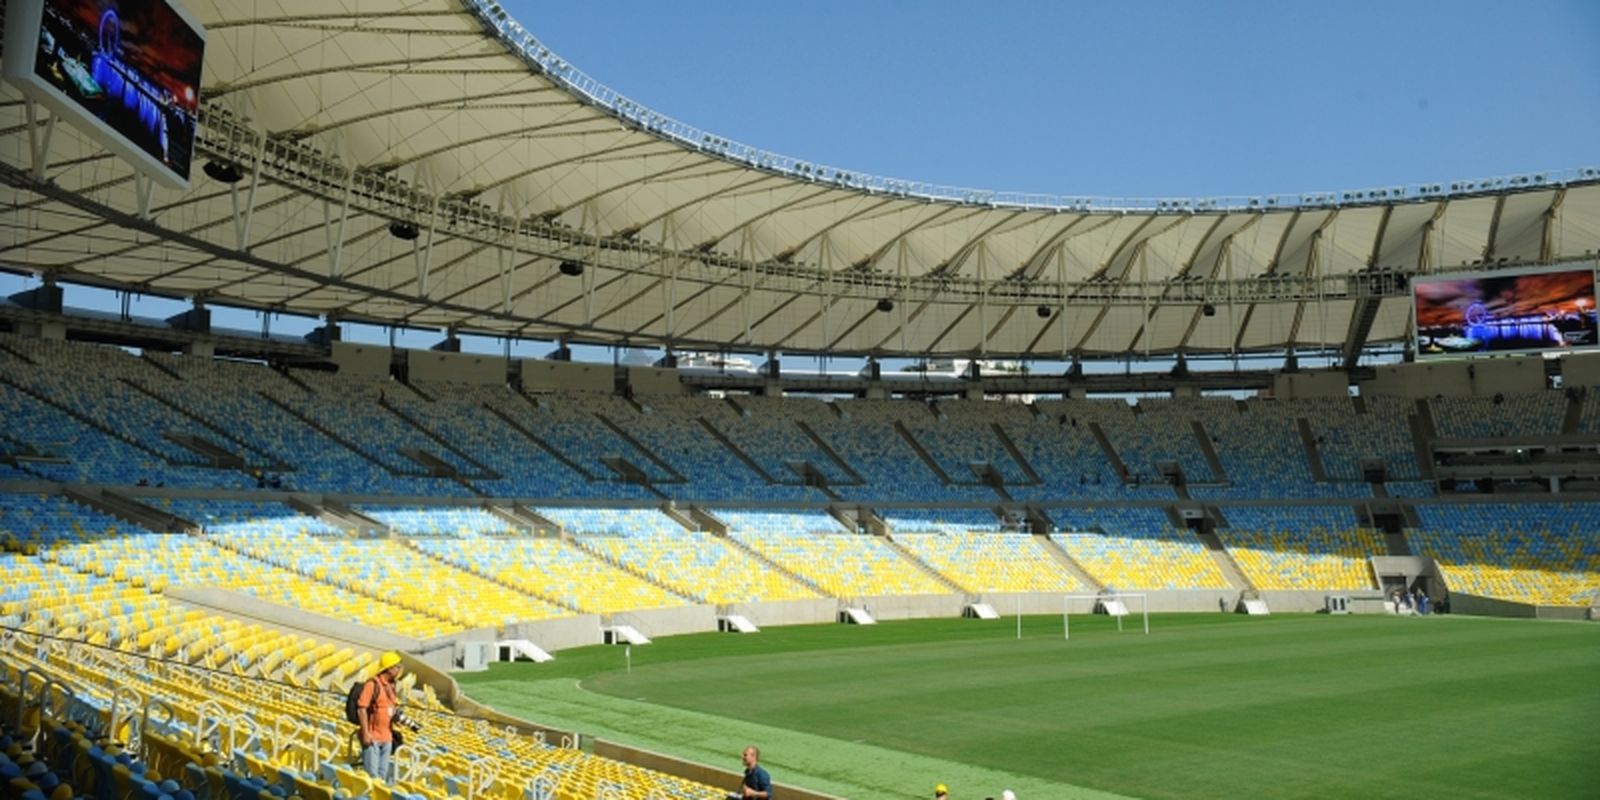 Entorno do Maracanã terá interdições para jogo do Fluminense pelo